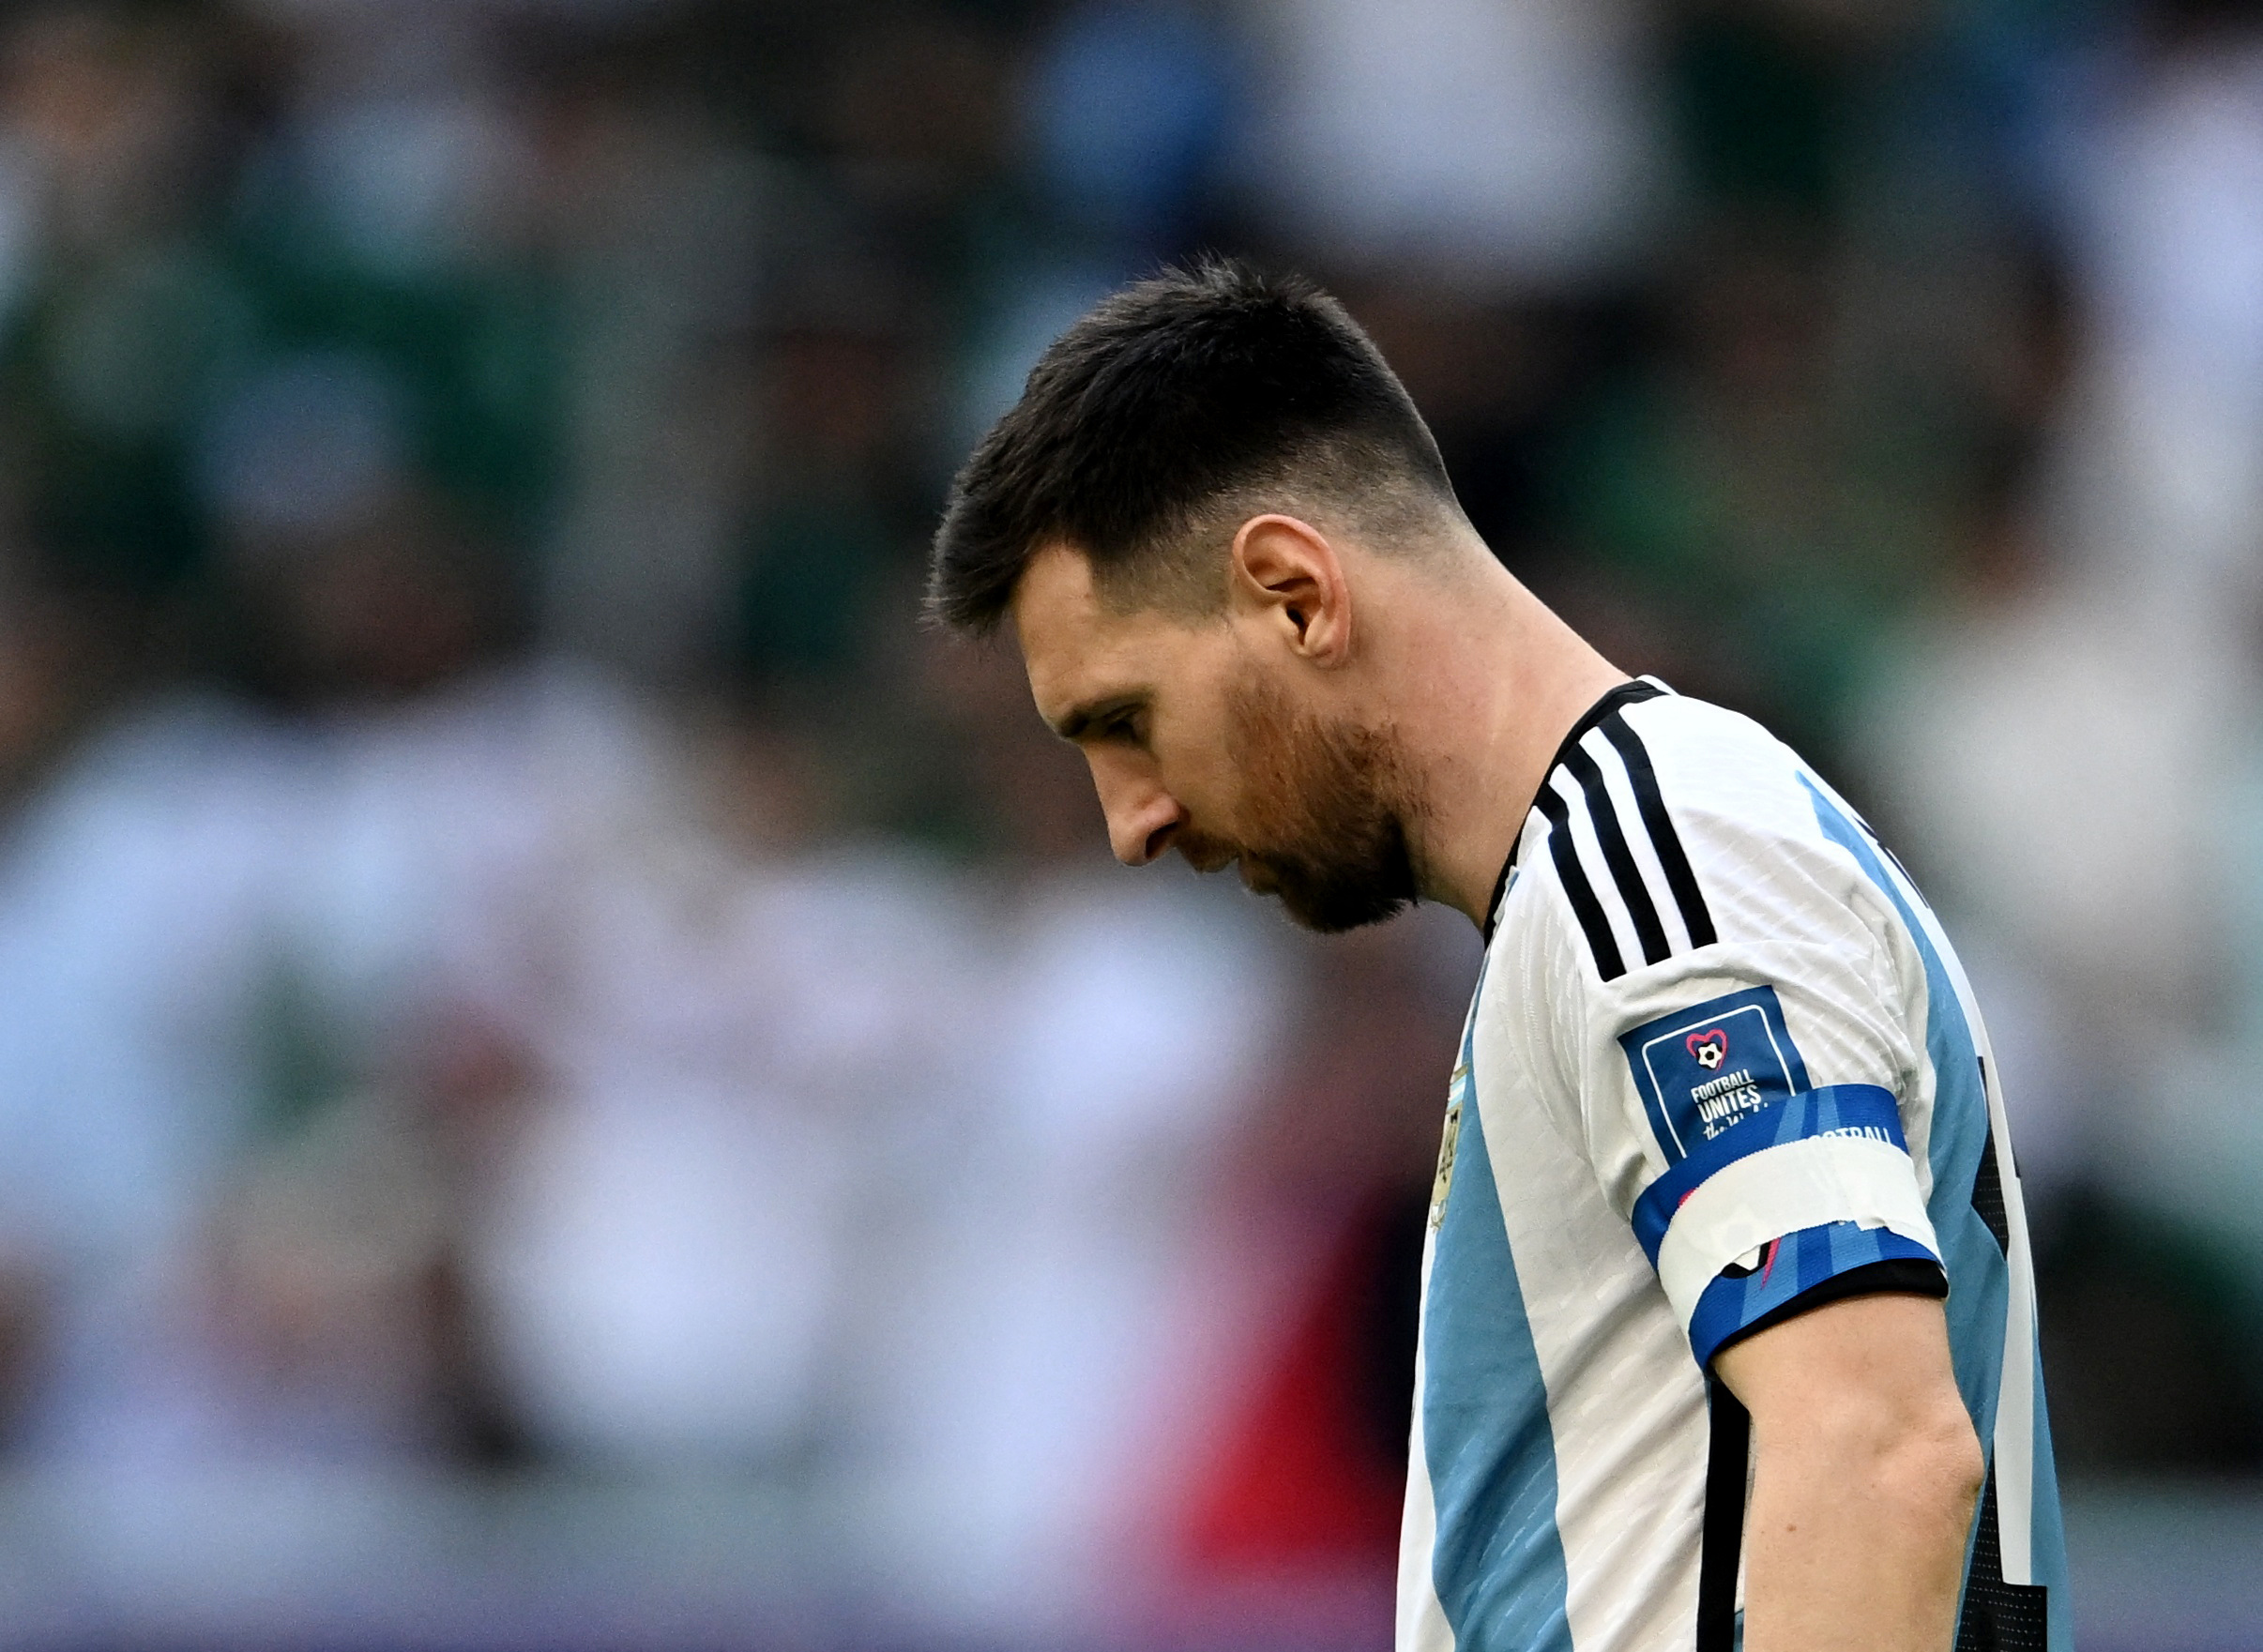 Μουντιάλ 2022: Η Αργεντινή έχασε σε παγκόσμιο κύπελλο από ομάδα εκτός Ευρώπης μετά από 32 χρόνια